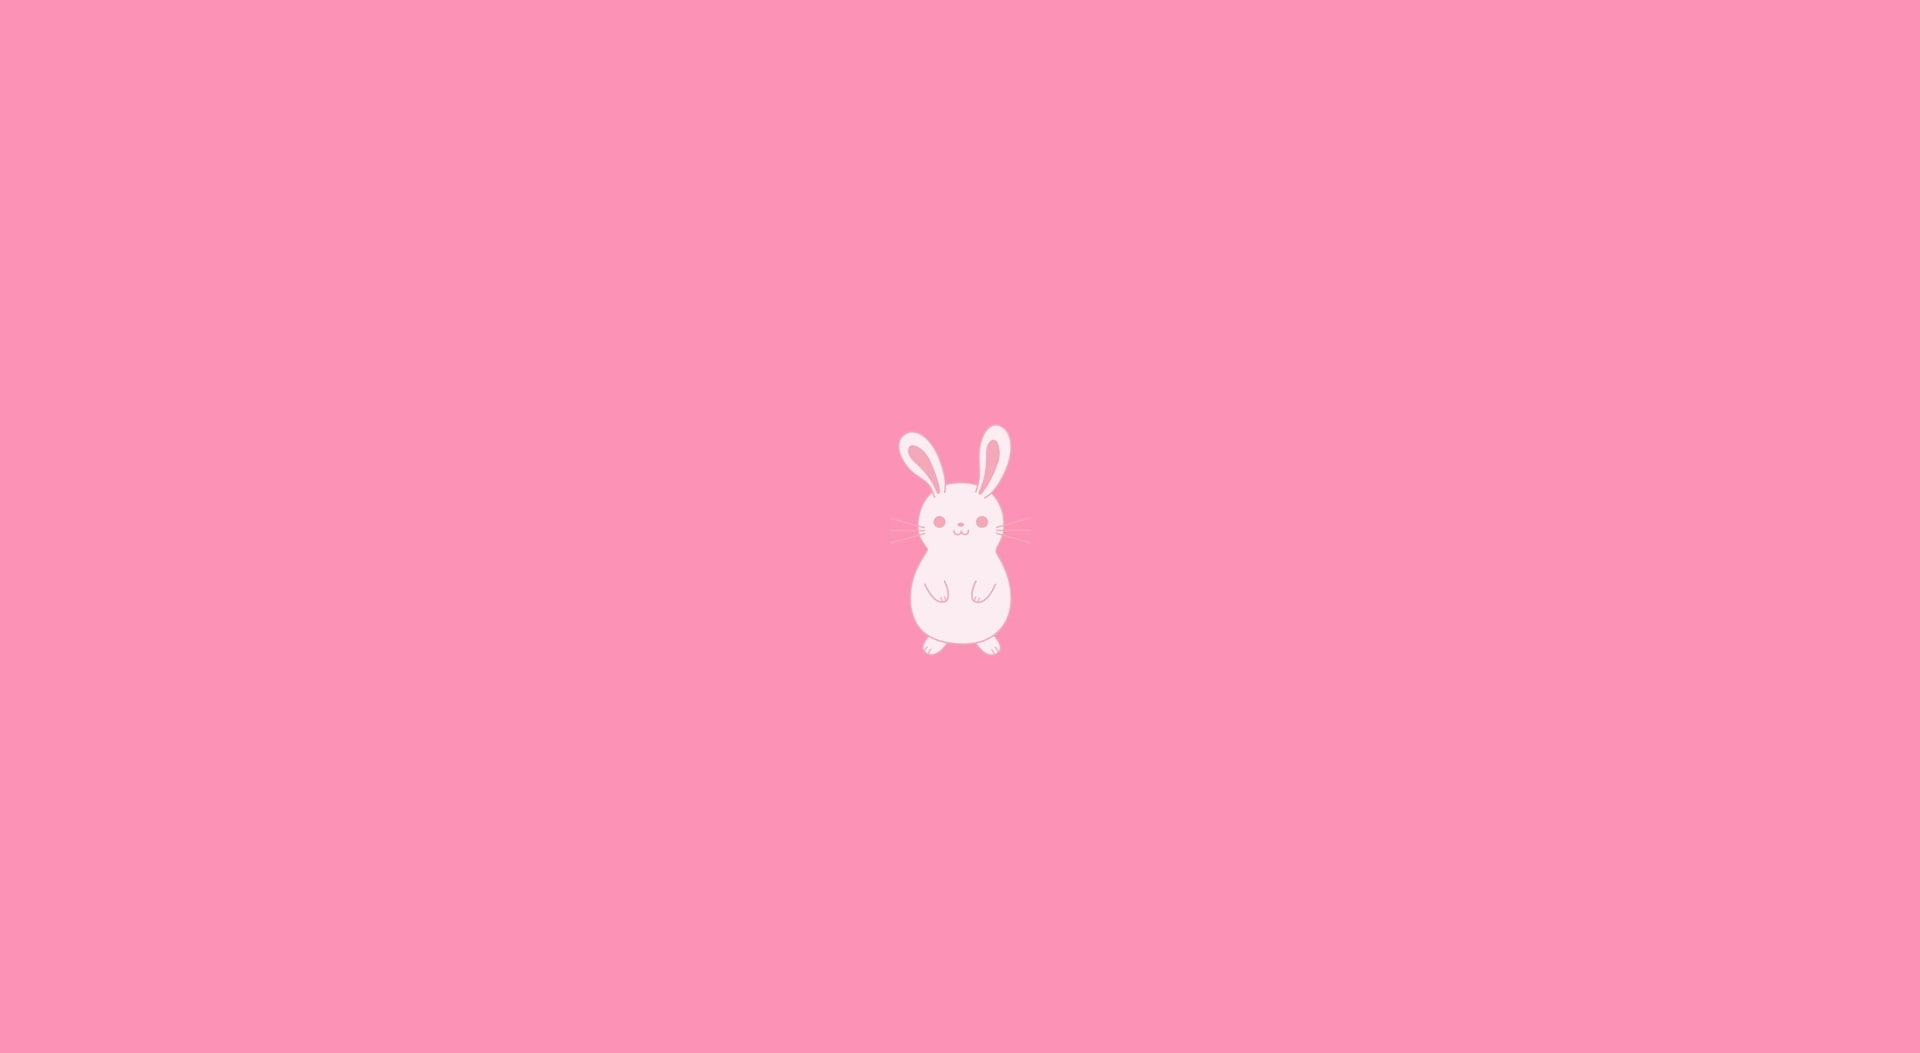 Free download | HD wallpaper: Run Rabbit Run, rabbit illustration, Cute ...